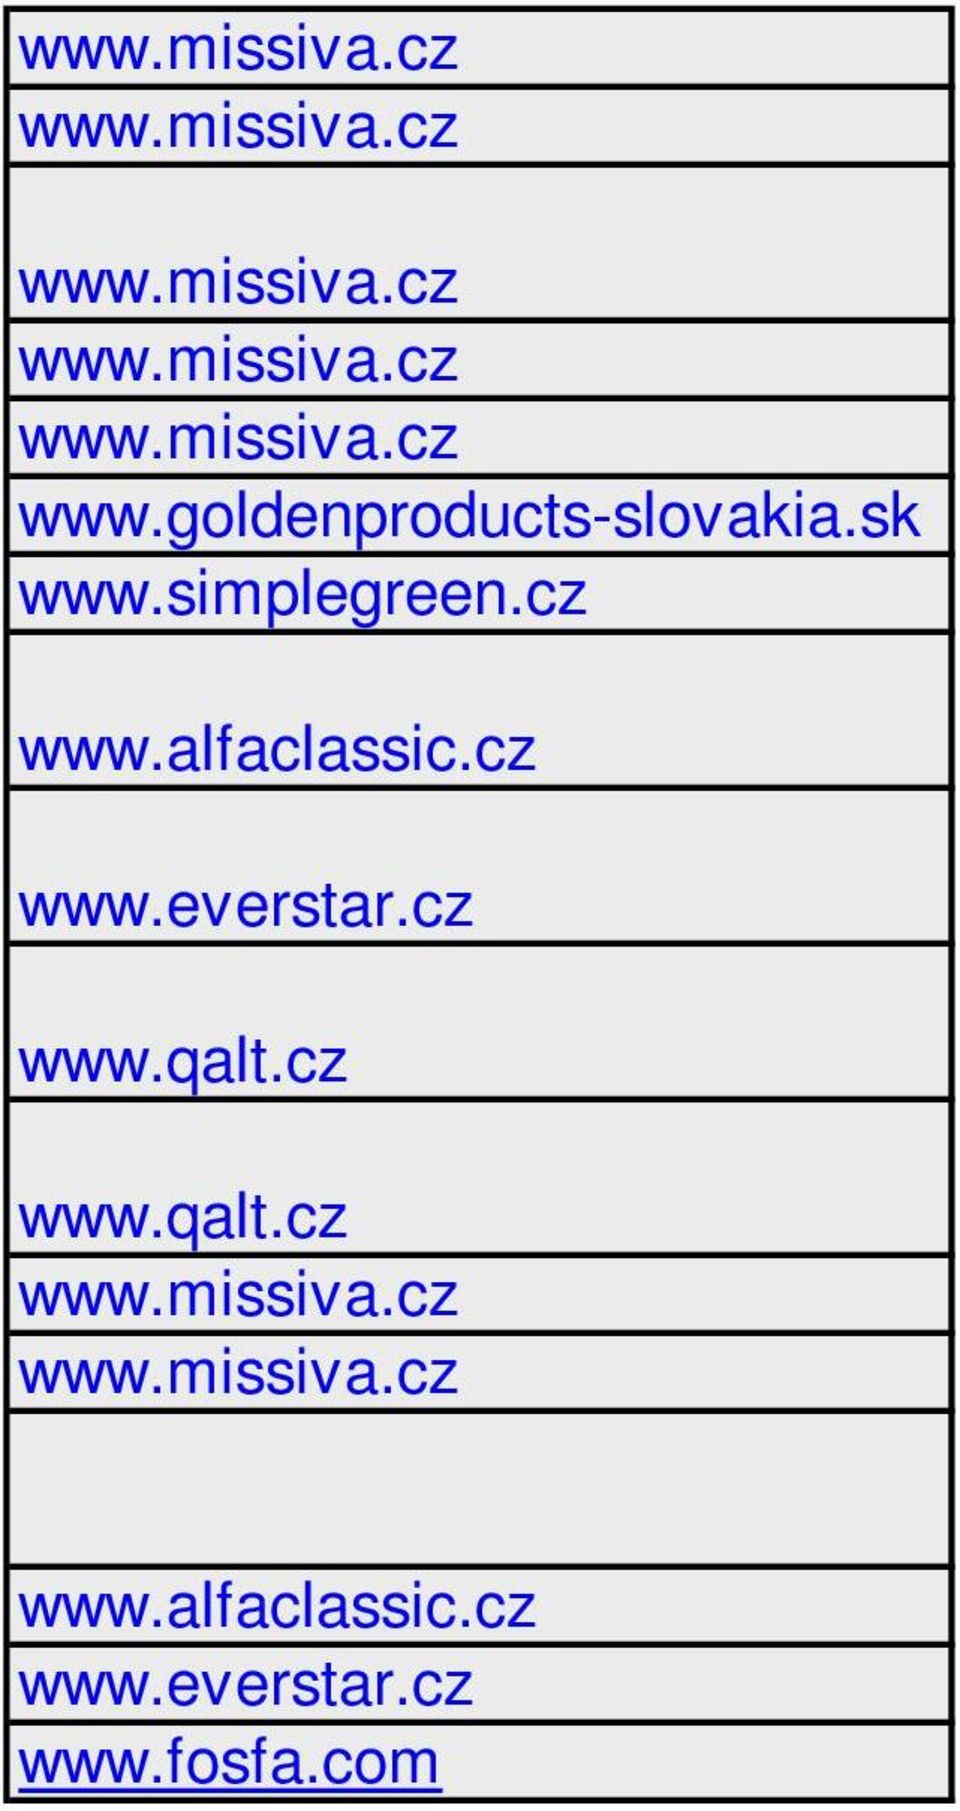 alfaclassic.cz www.everstar.